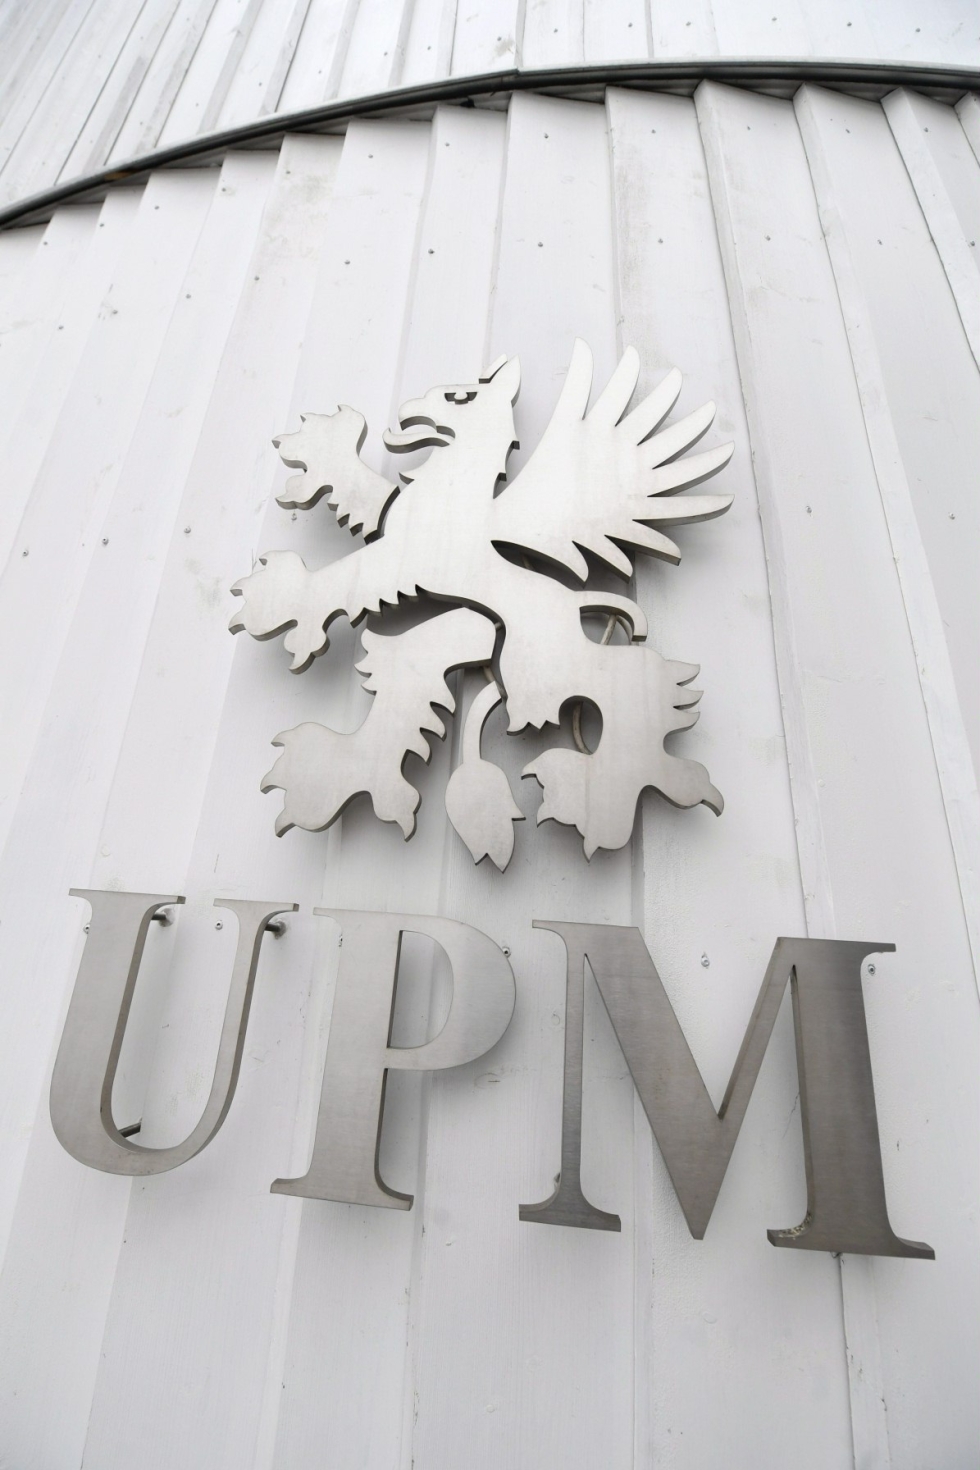 Kiistan taustalla on UPM:n vaatimus, että työehtosopimukset laadittaisiin yhtiön viidelle eri toimialalle erikseen. Lehtikuva / Vesa Moilanen